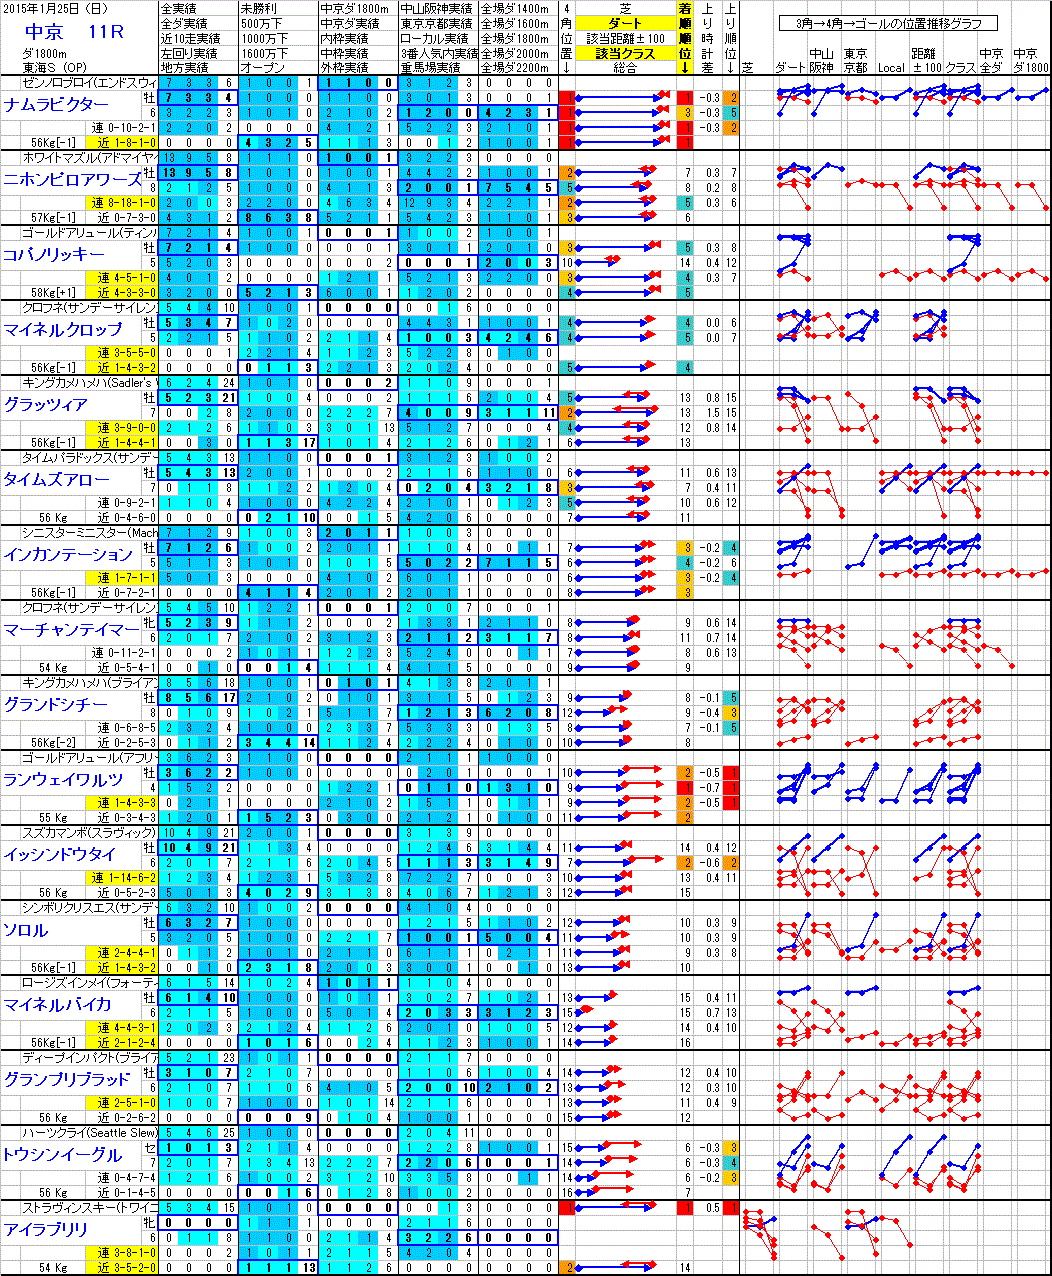 中京 2015年1月25日 （日） ： 11R － 分析データ